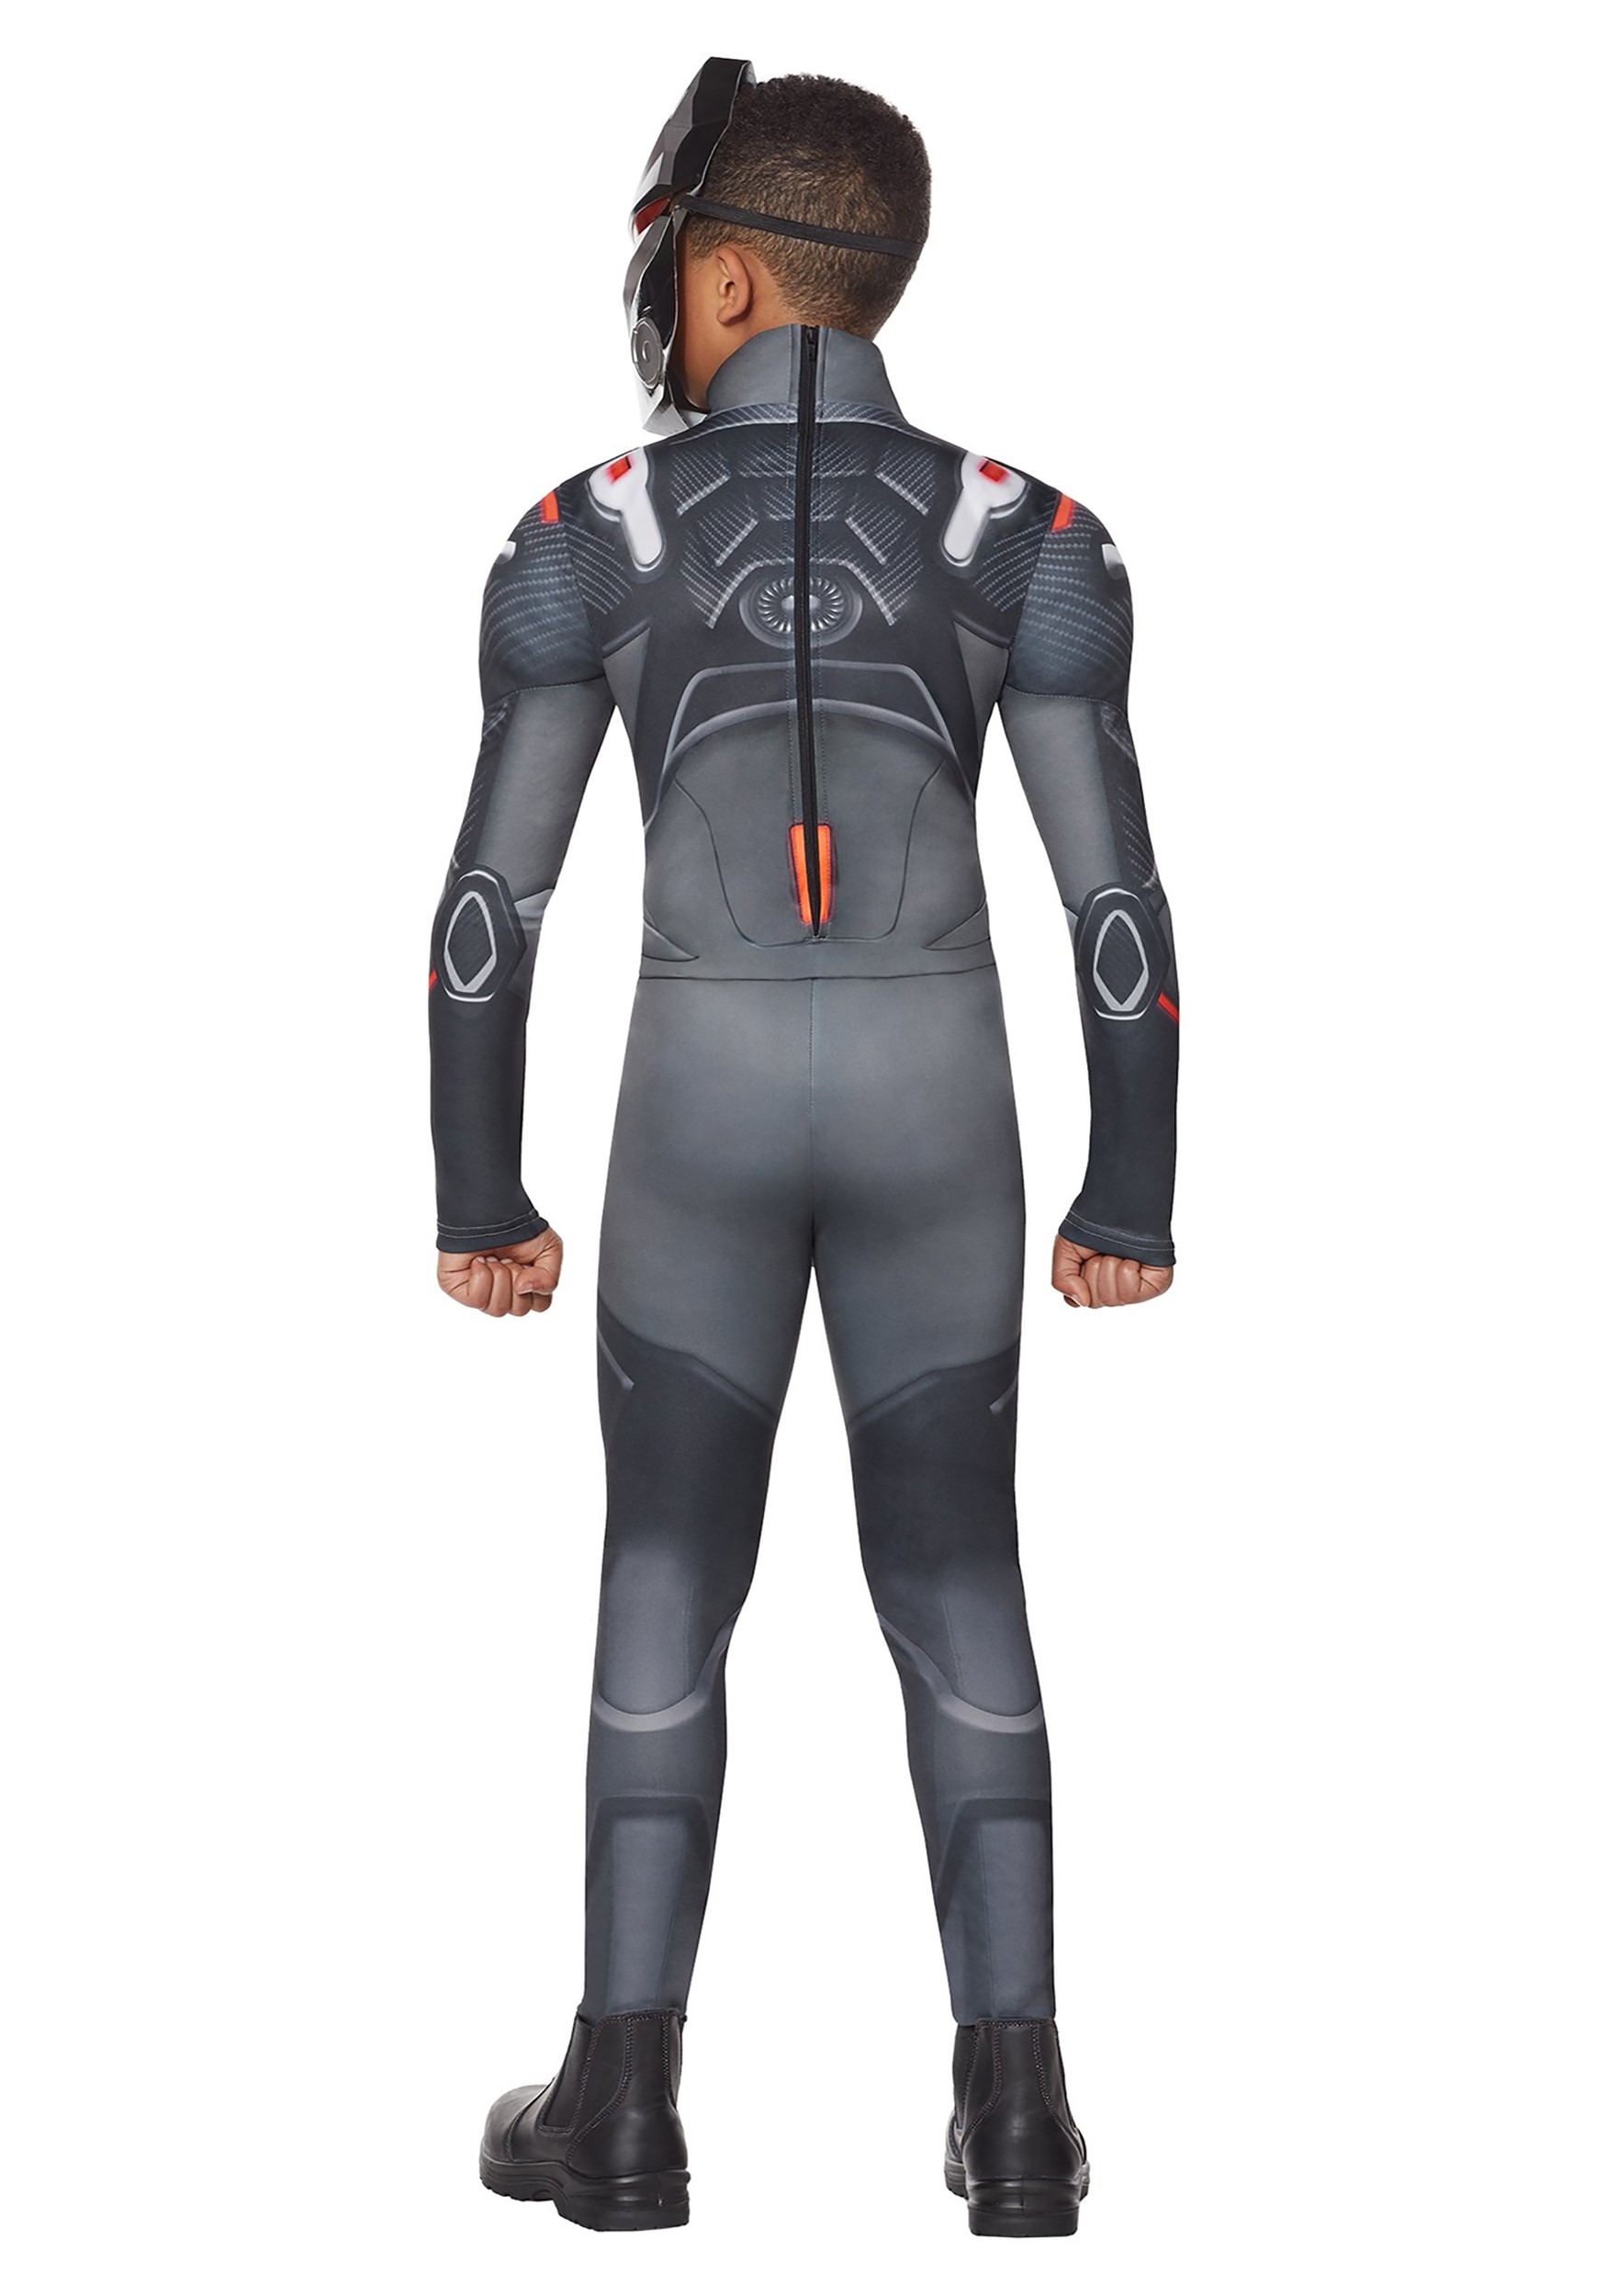 Fortnite Omega Costume For Boys